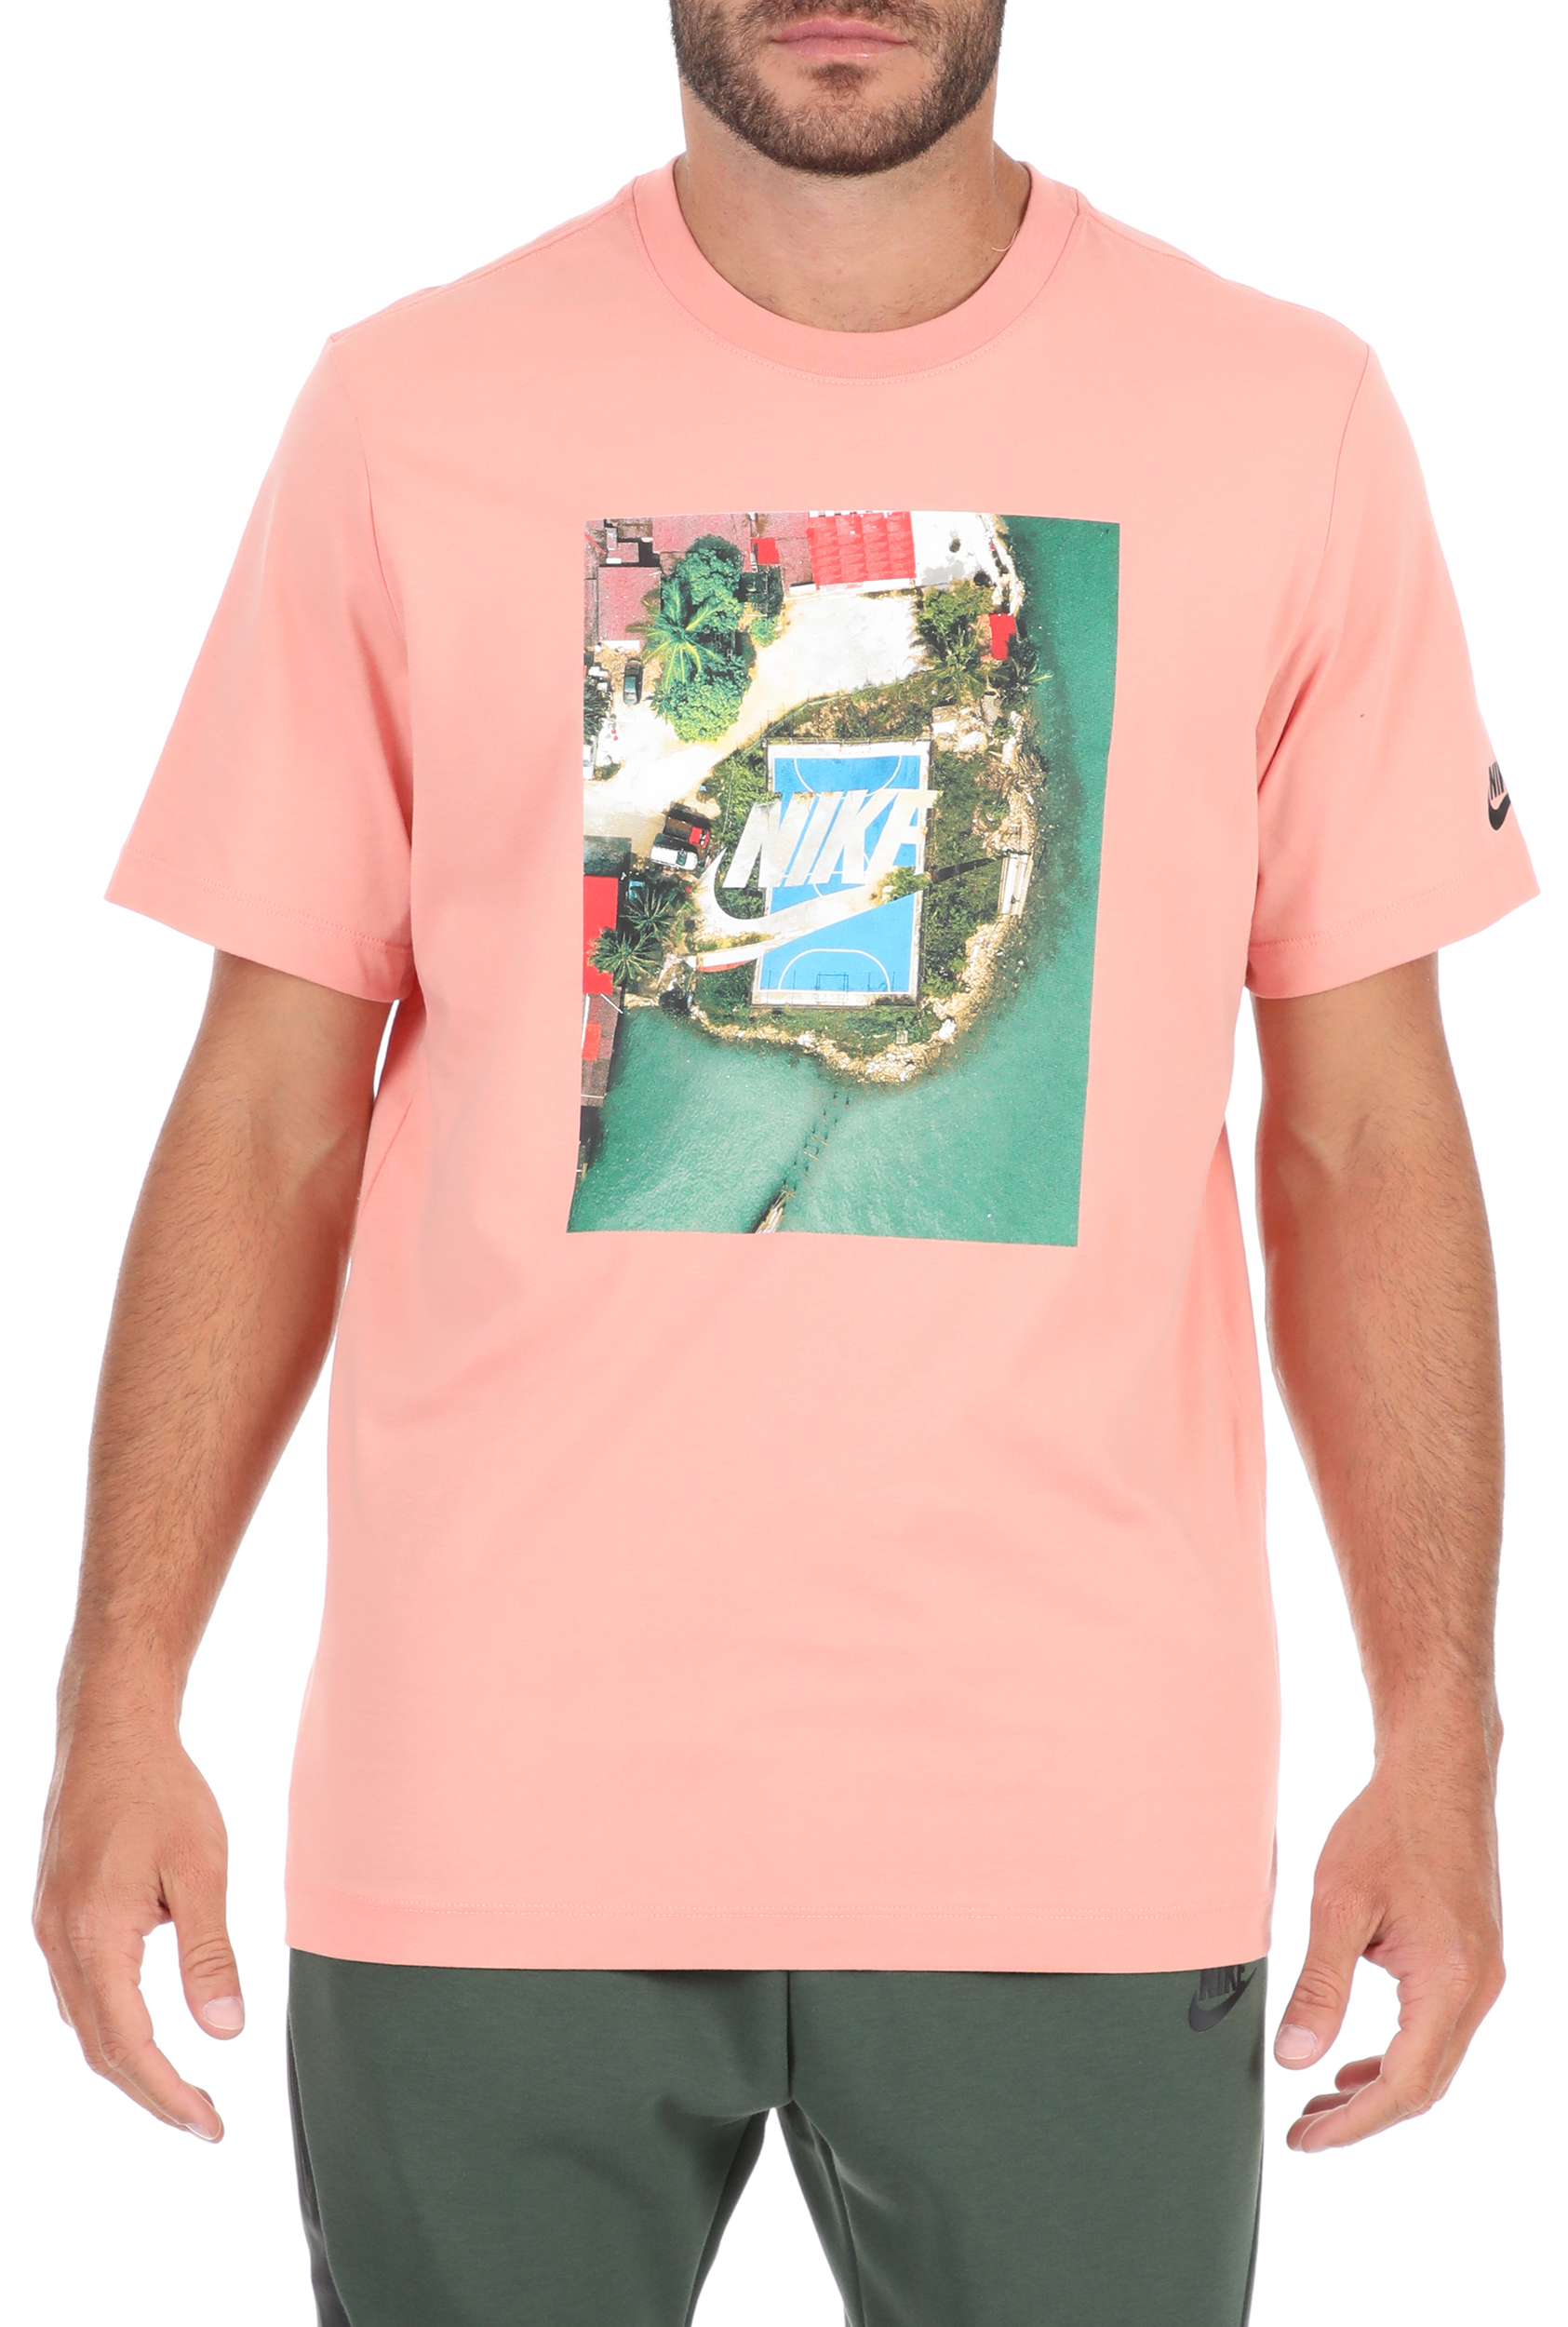 Ανδρικά/Ρούχα/Αθλητικά/T-shirt NIKE - Ανδρικό t-shirt NIKE NSW SS TEE COURT 2 ροζ